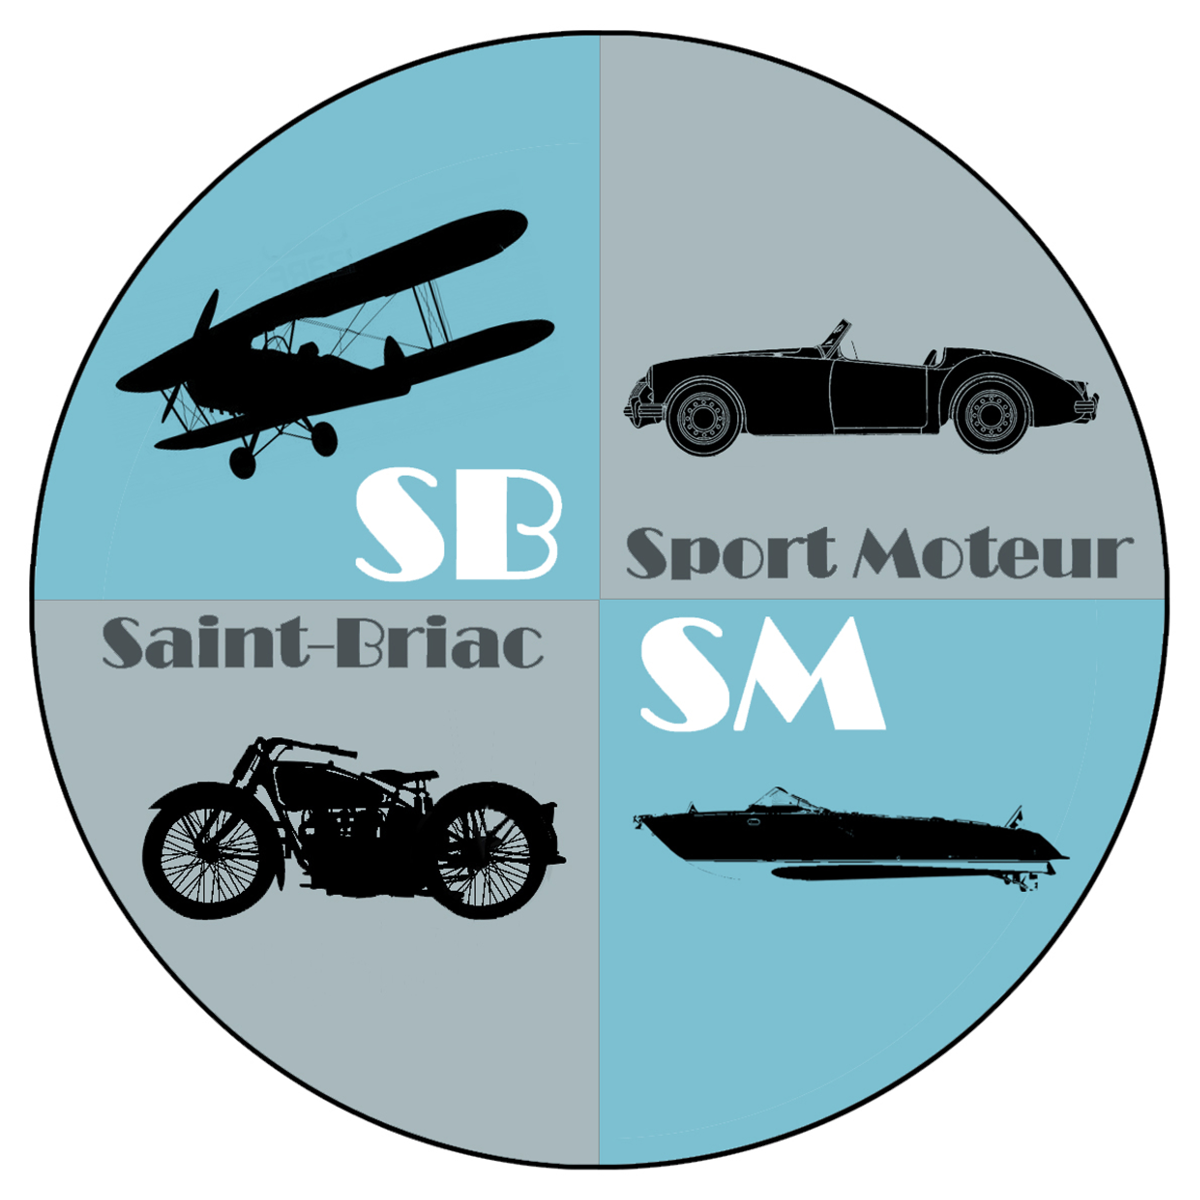 Saint-Briac Sport Moteur